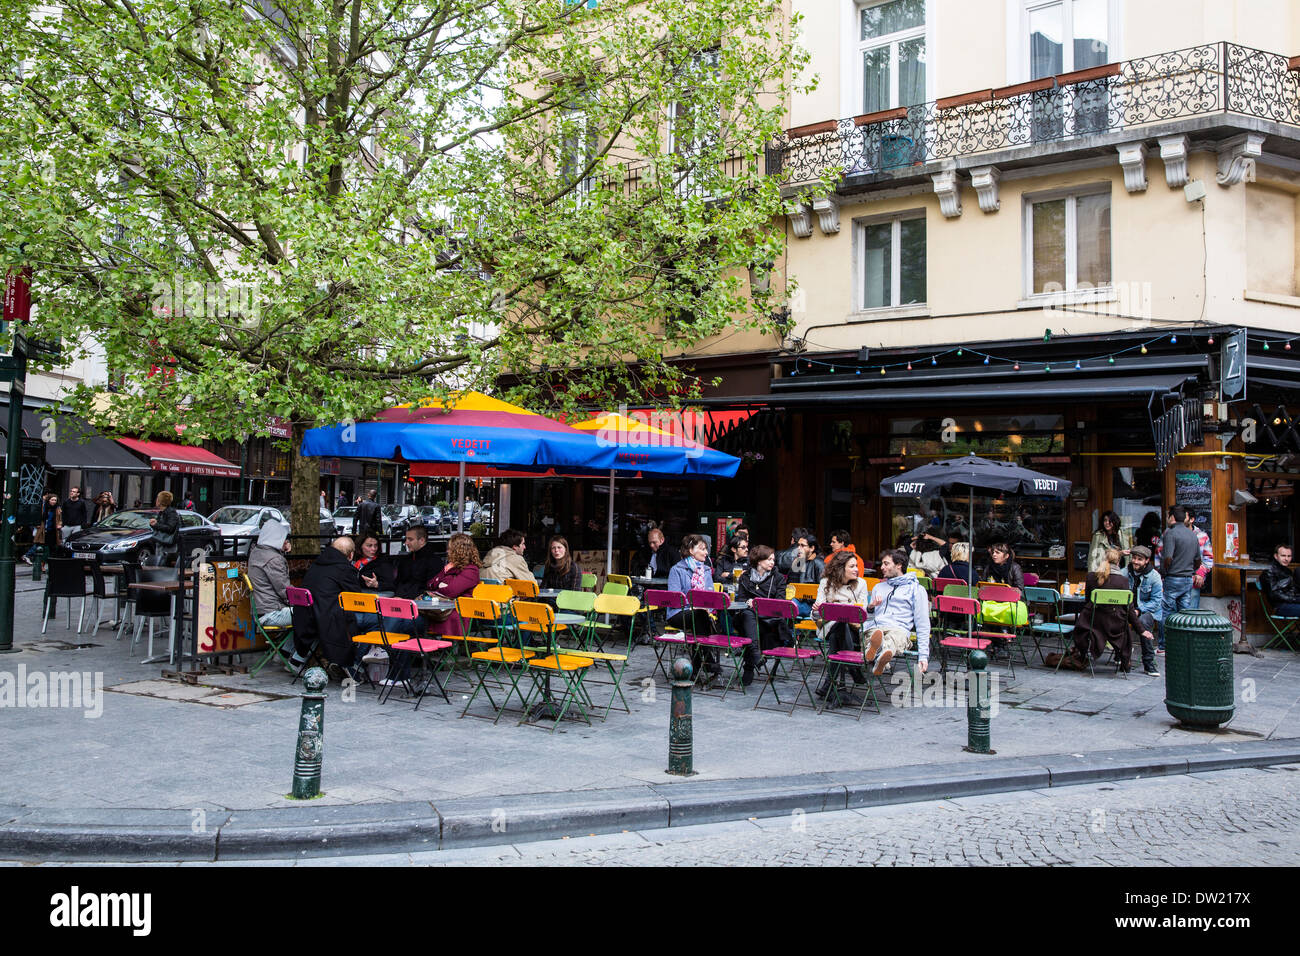 Outdoor cafe in Brussels Belgium Stock Photo